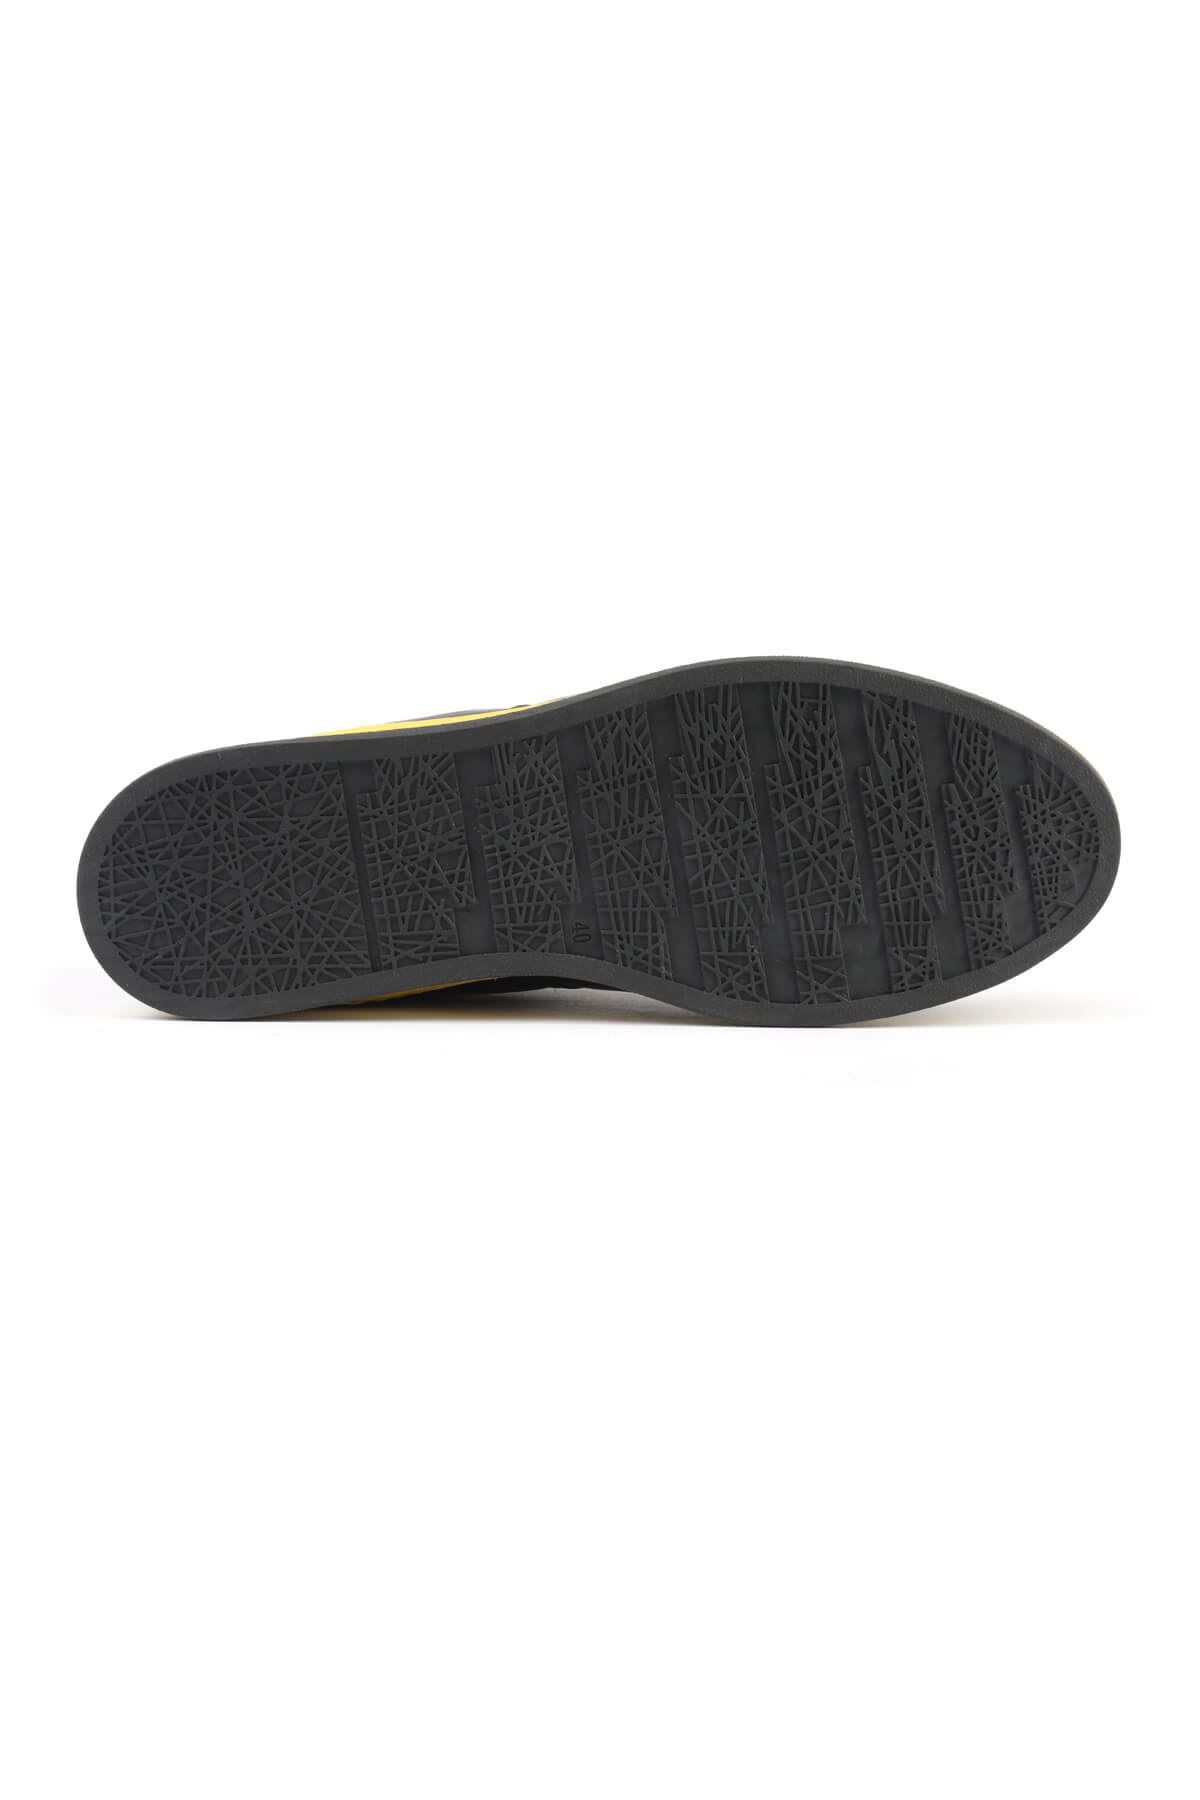 Libero 3196 Black Yellow Sneaker Shoes